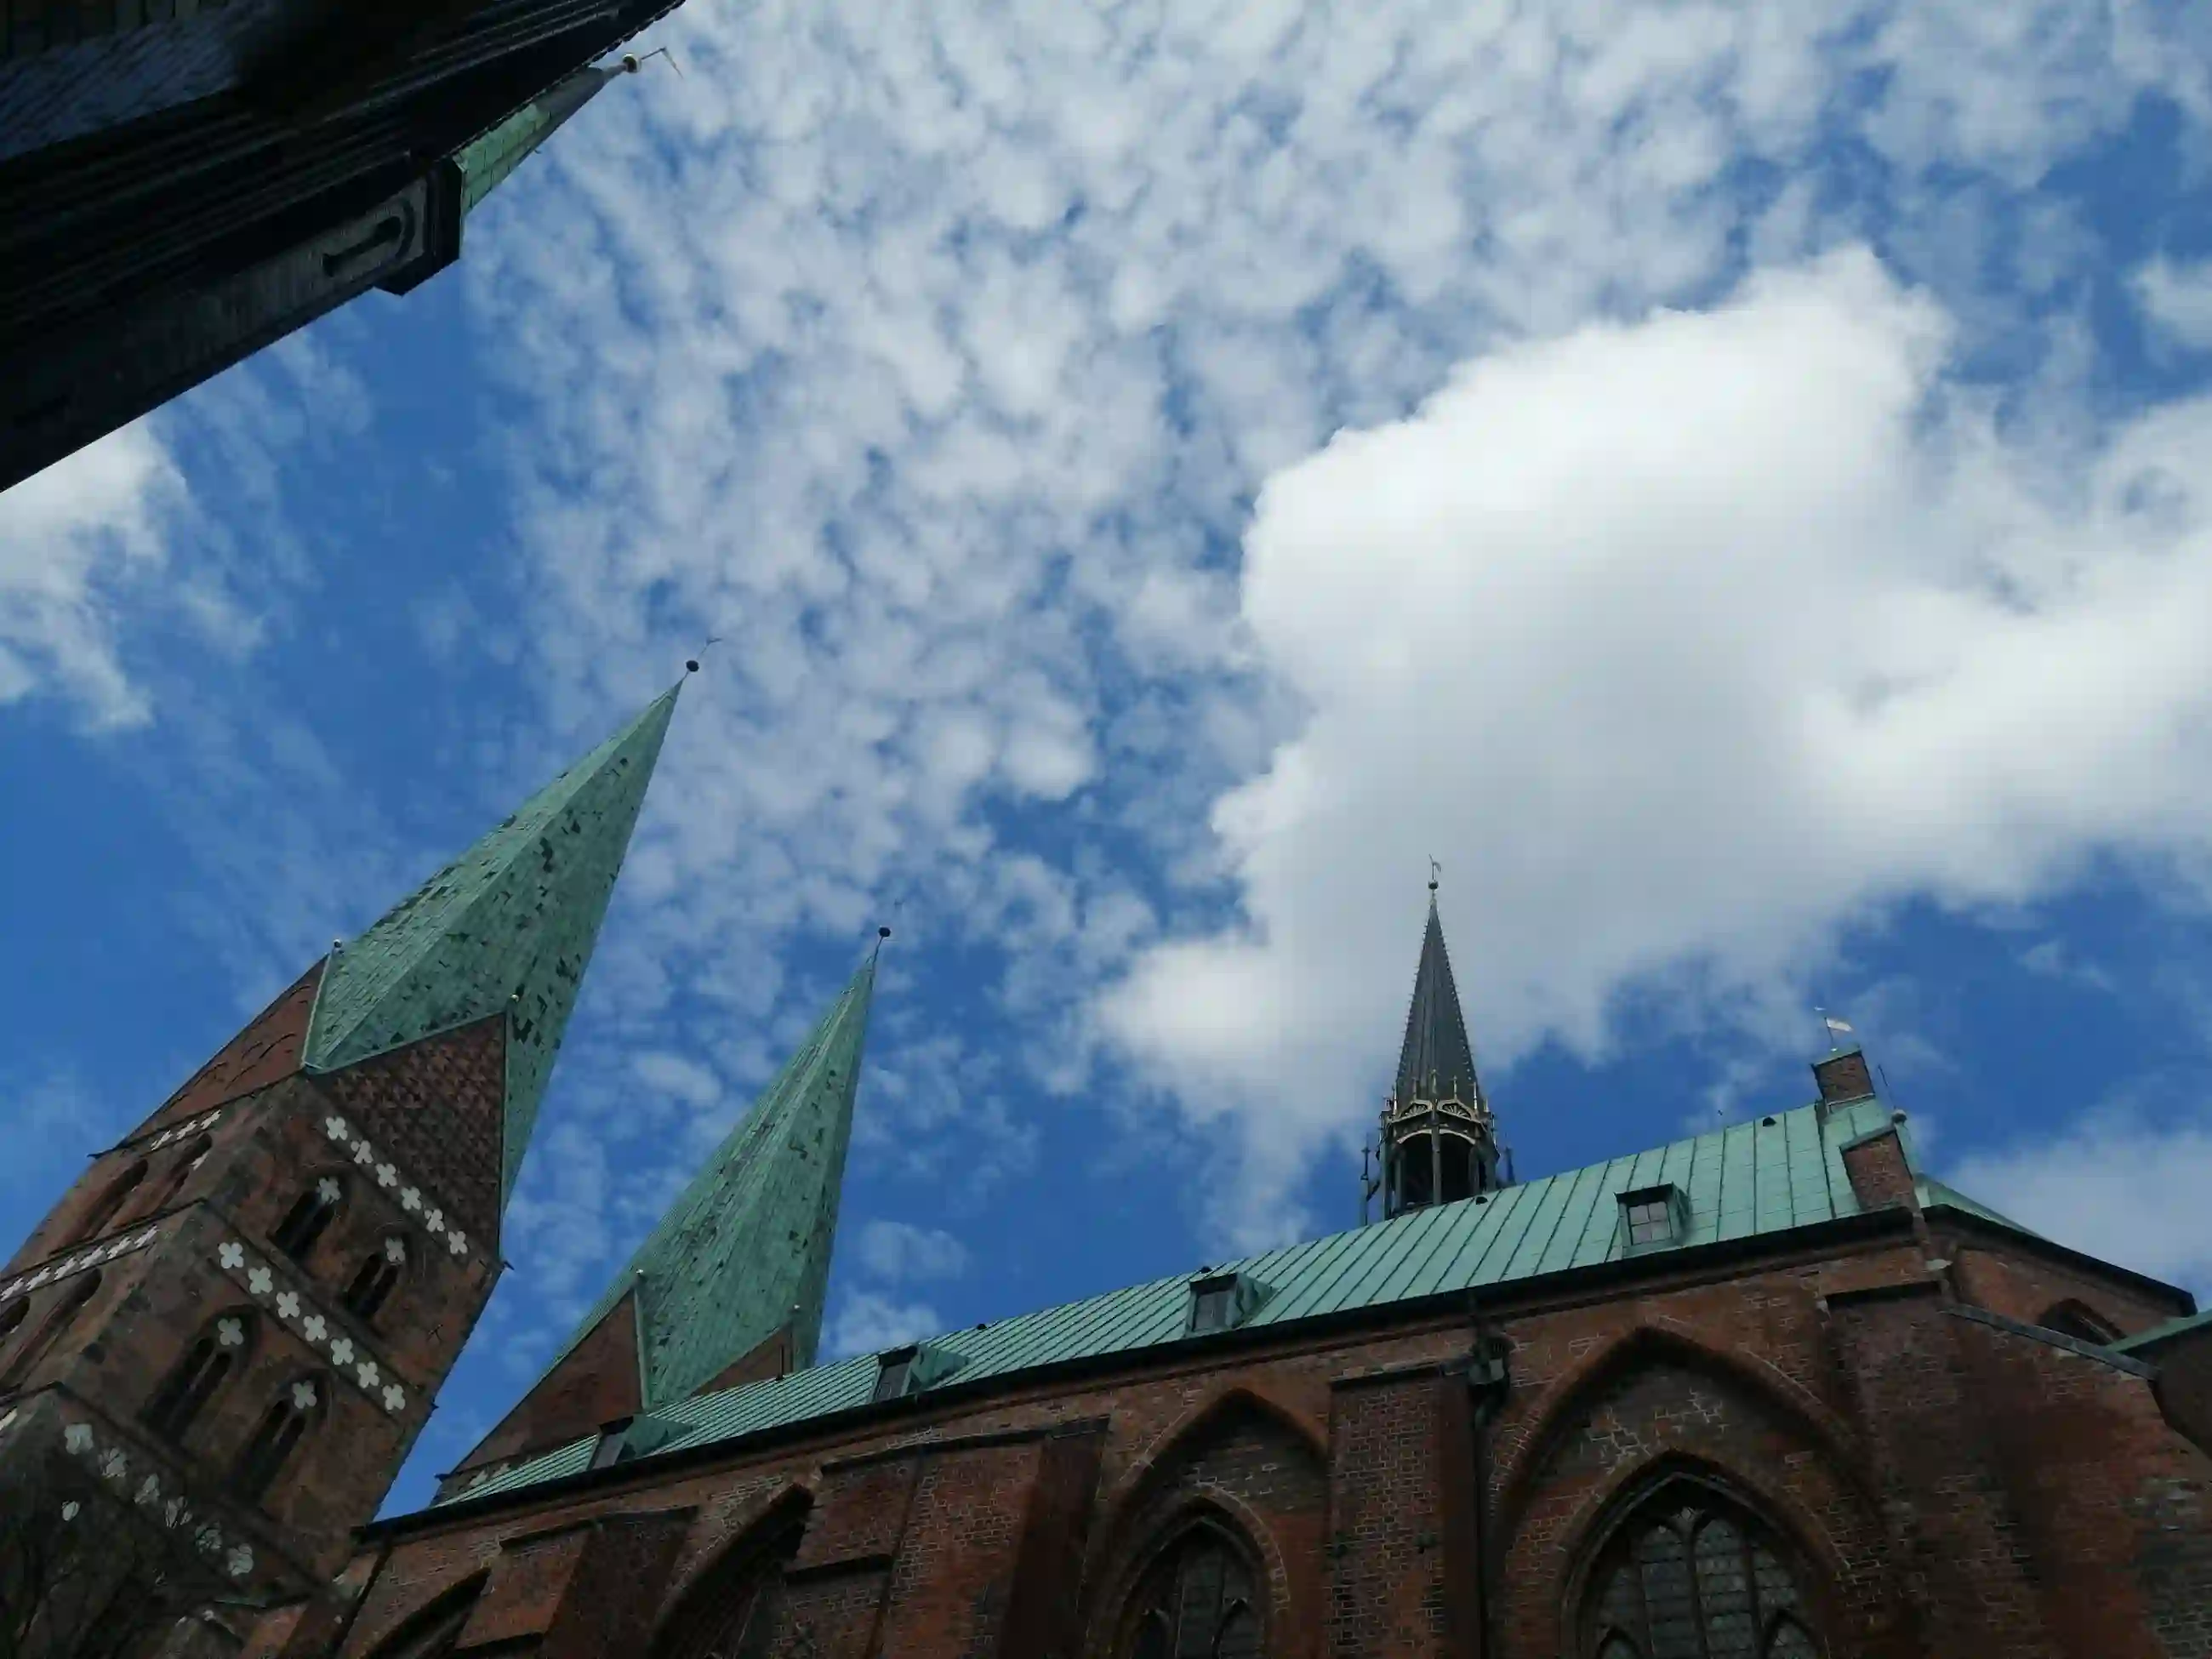 Marienkirche von außen in Sommerwolken